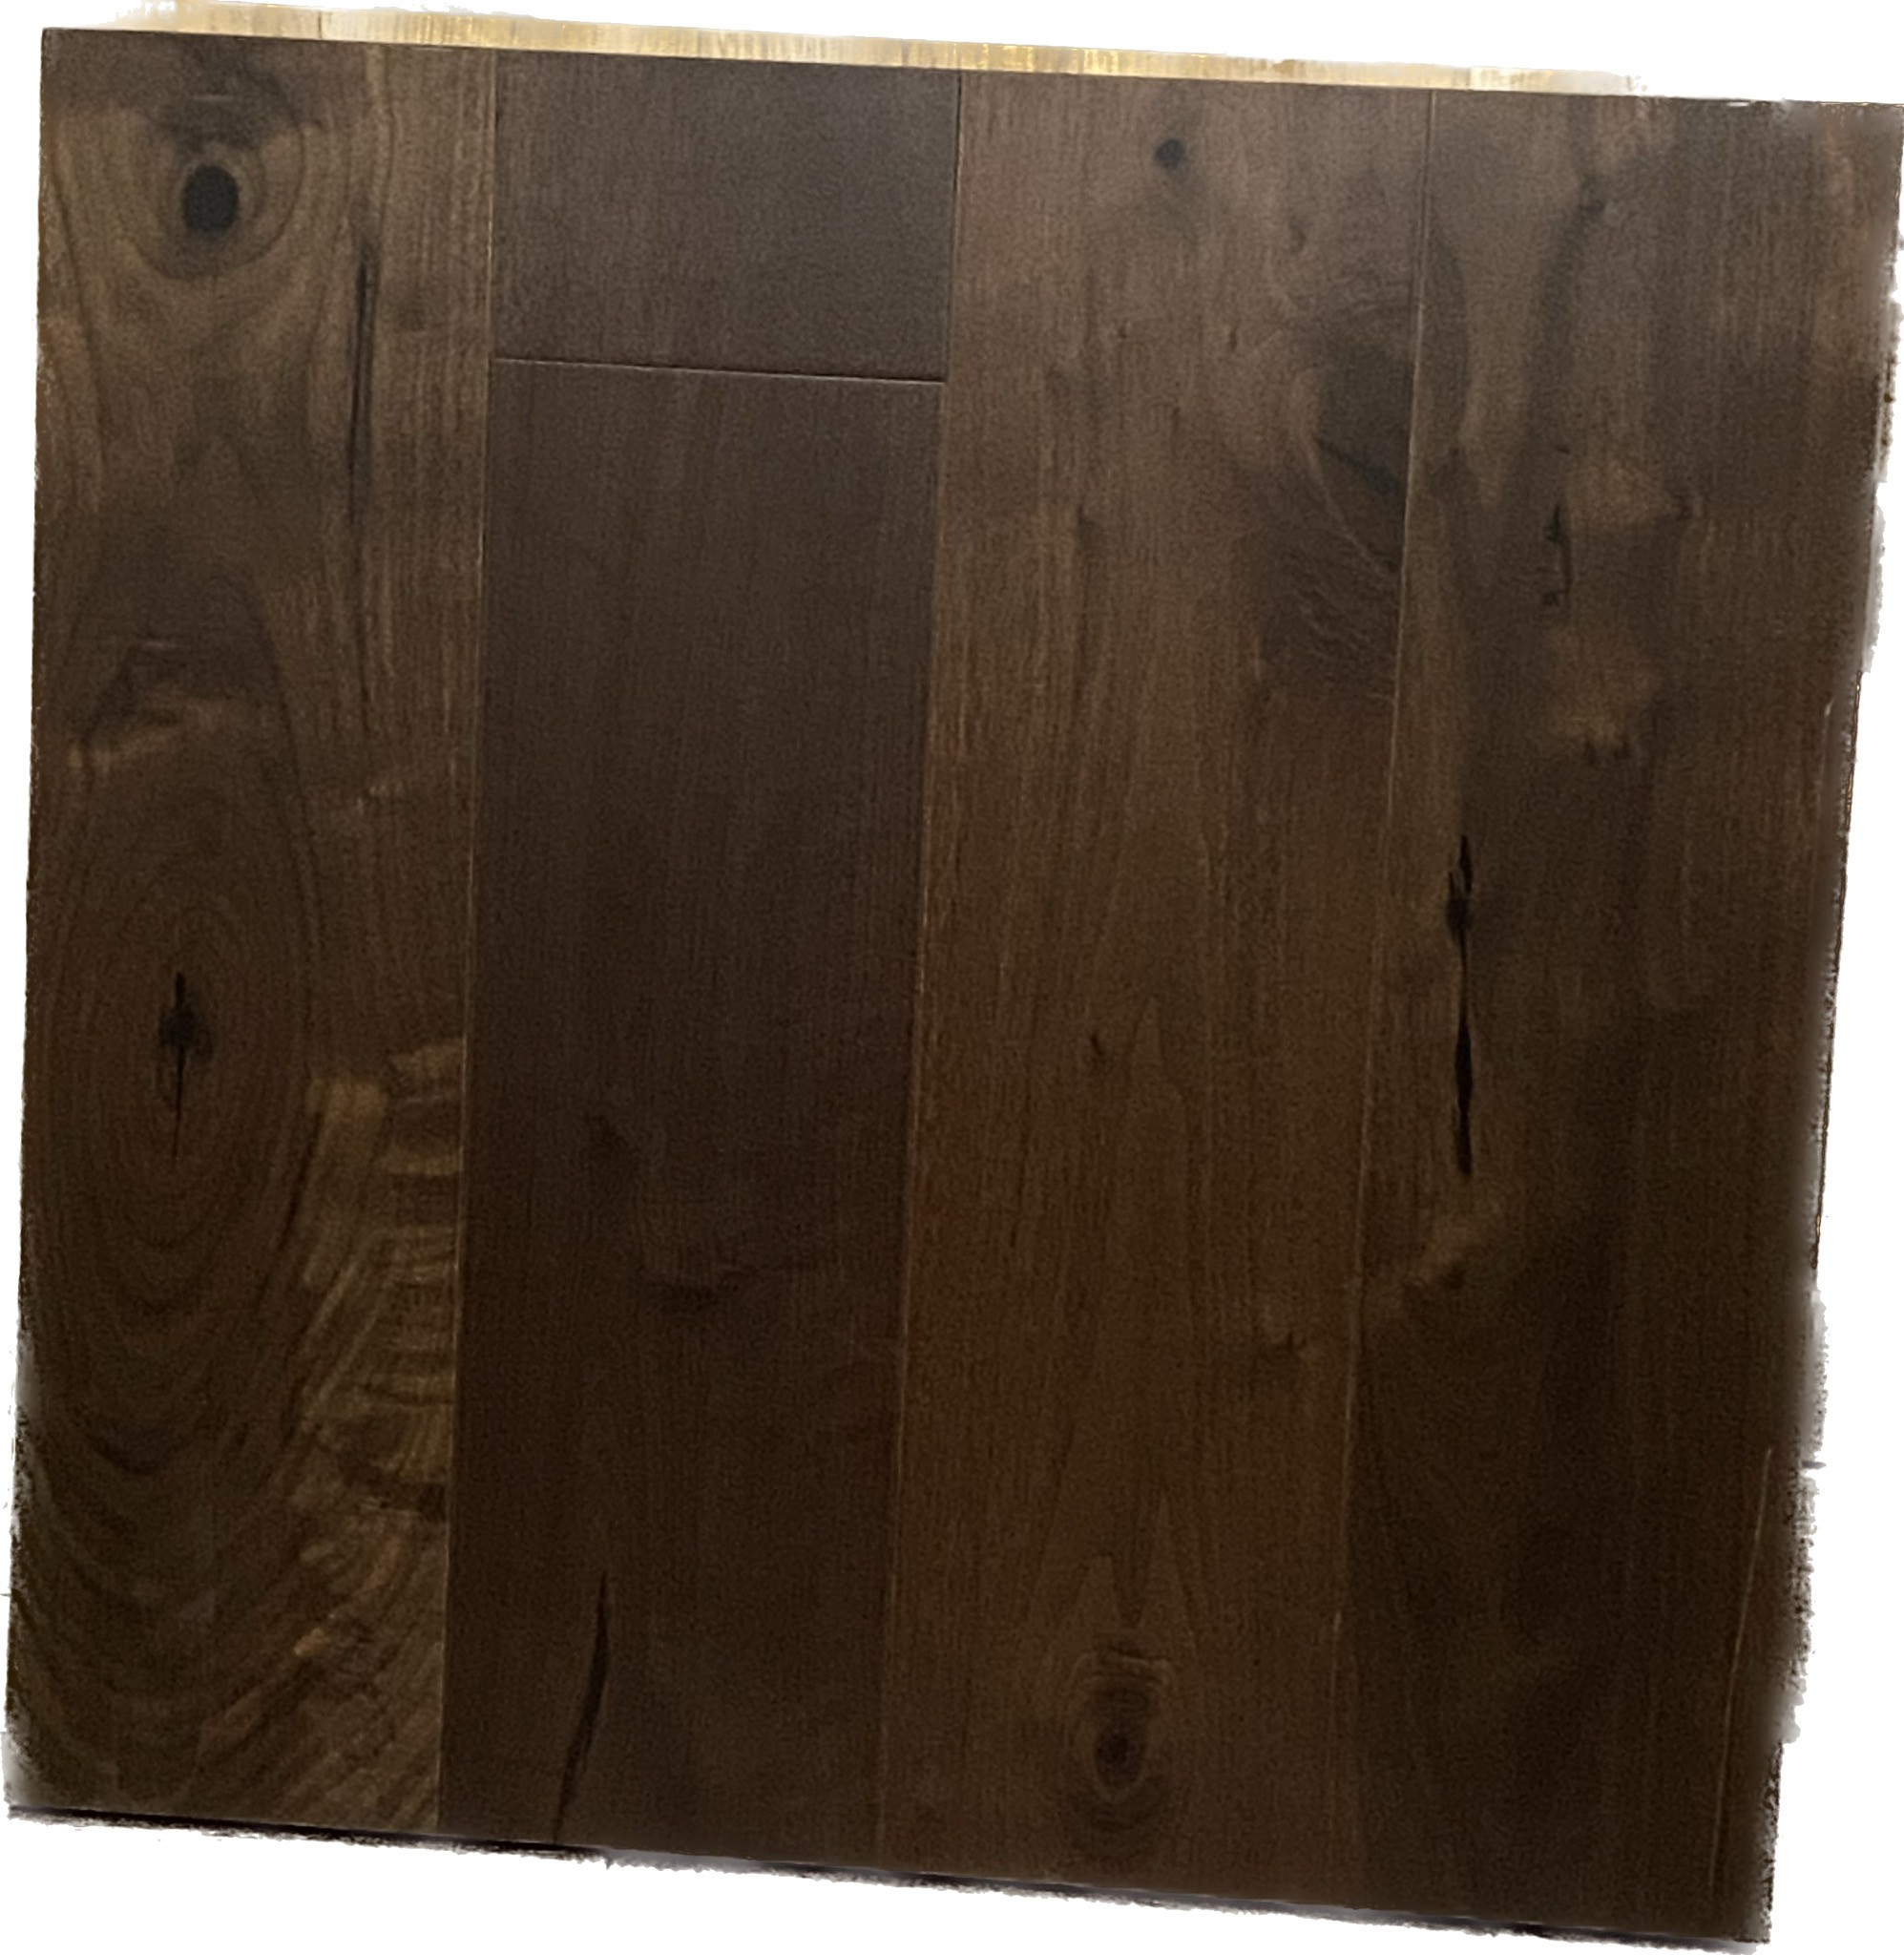 wooden floor sample